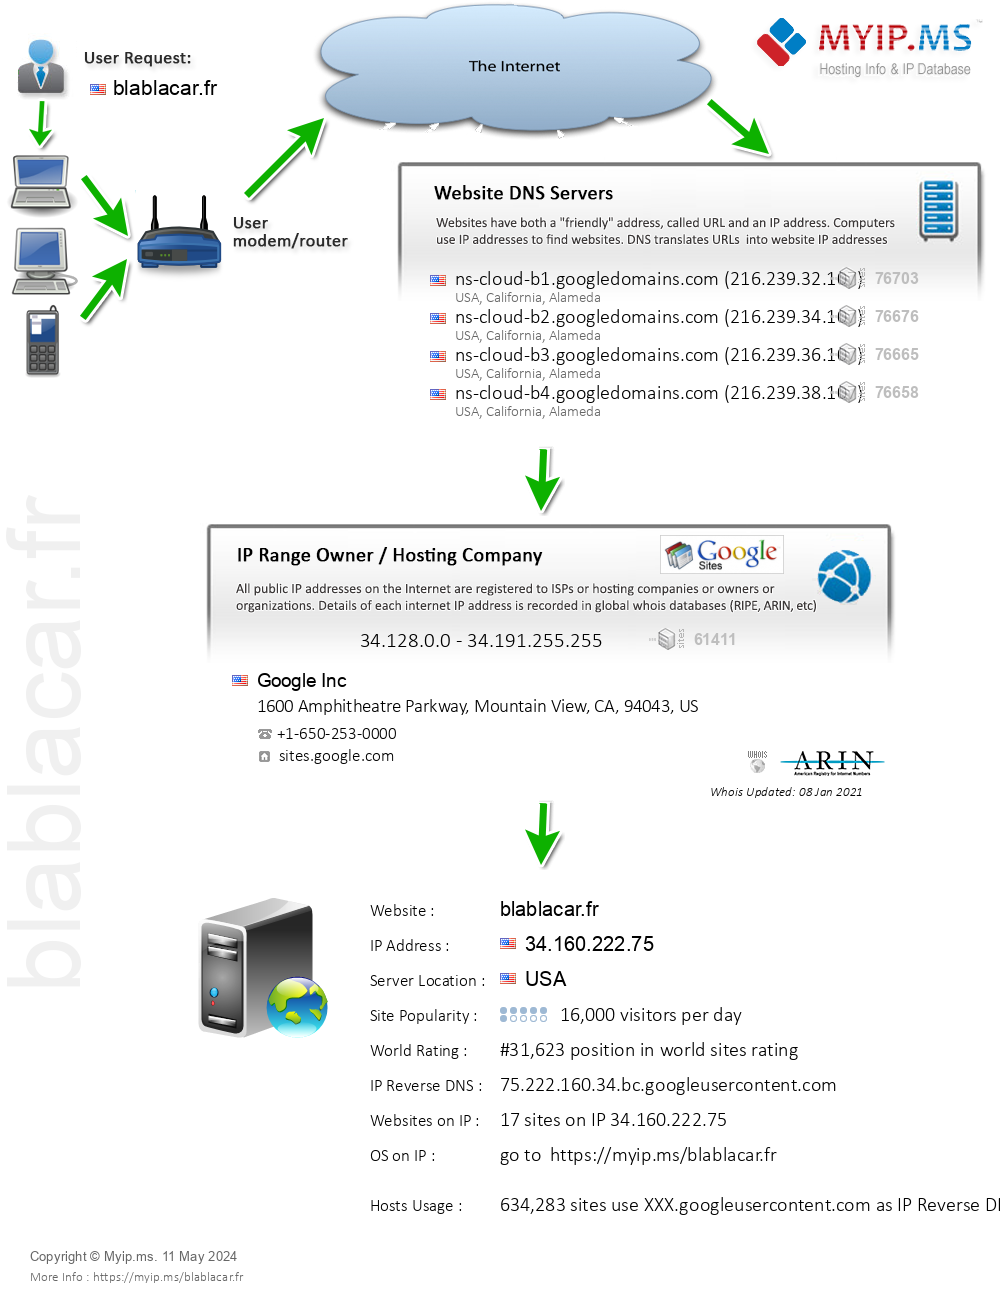 Blablacar.fr - Website Hosting Visual IP Diagram